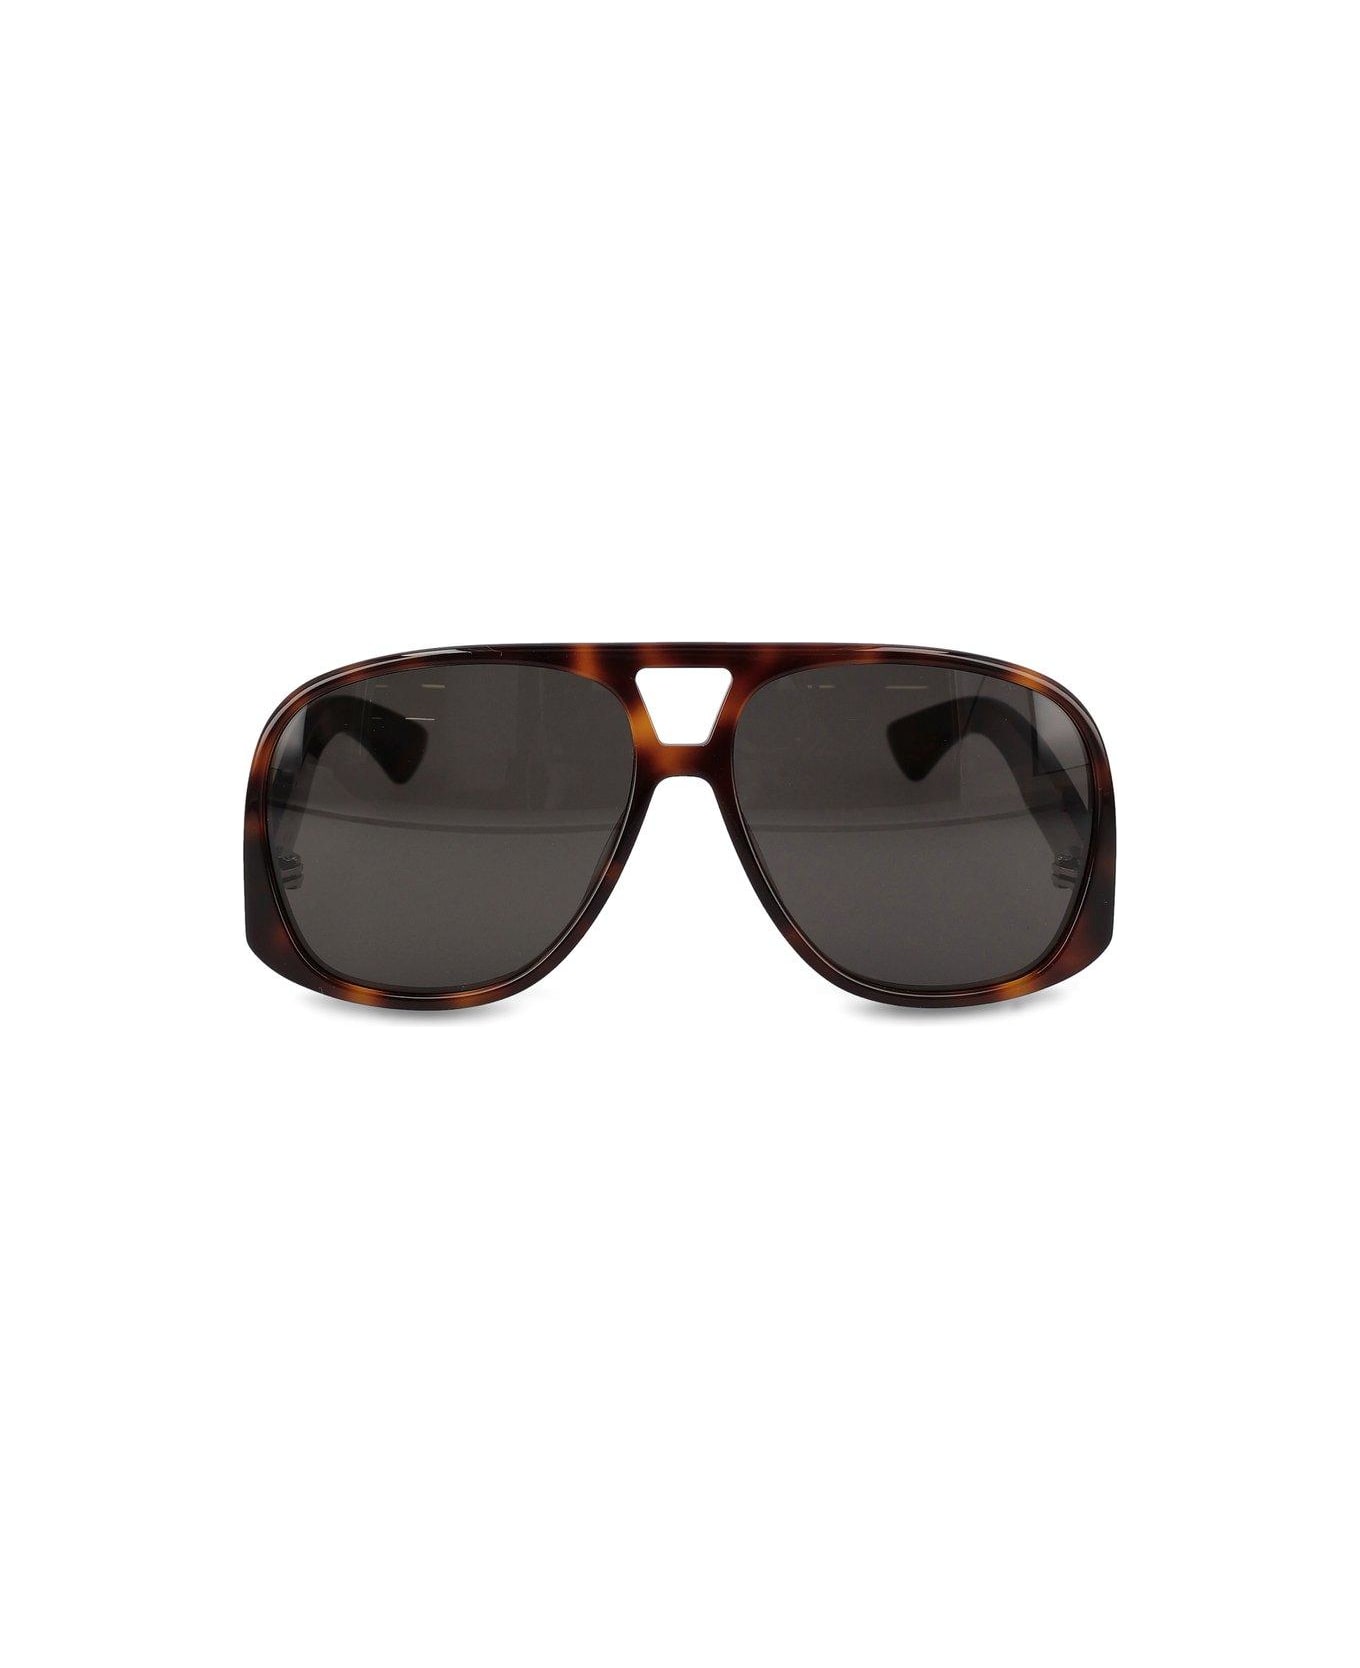 Saint Laurent Eyewear Sl 652 Solace Sunglasses - Havana/havana/black